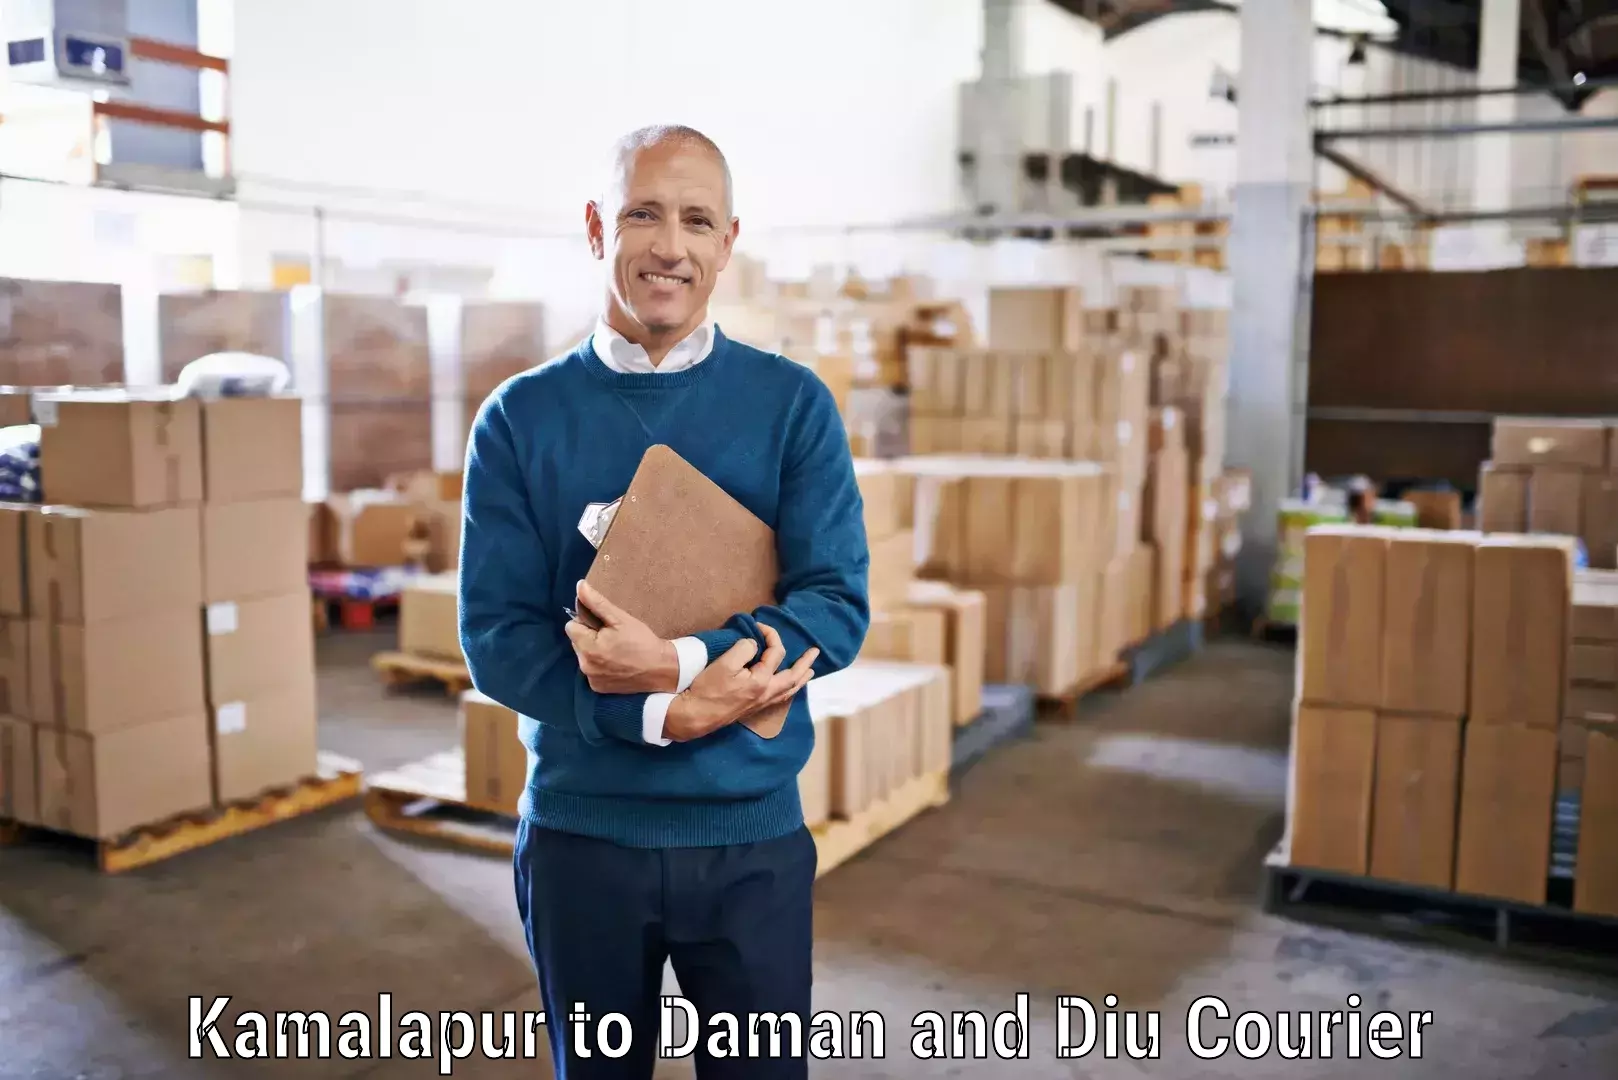 Multi-city courier Kamalapur to Daman